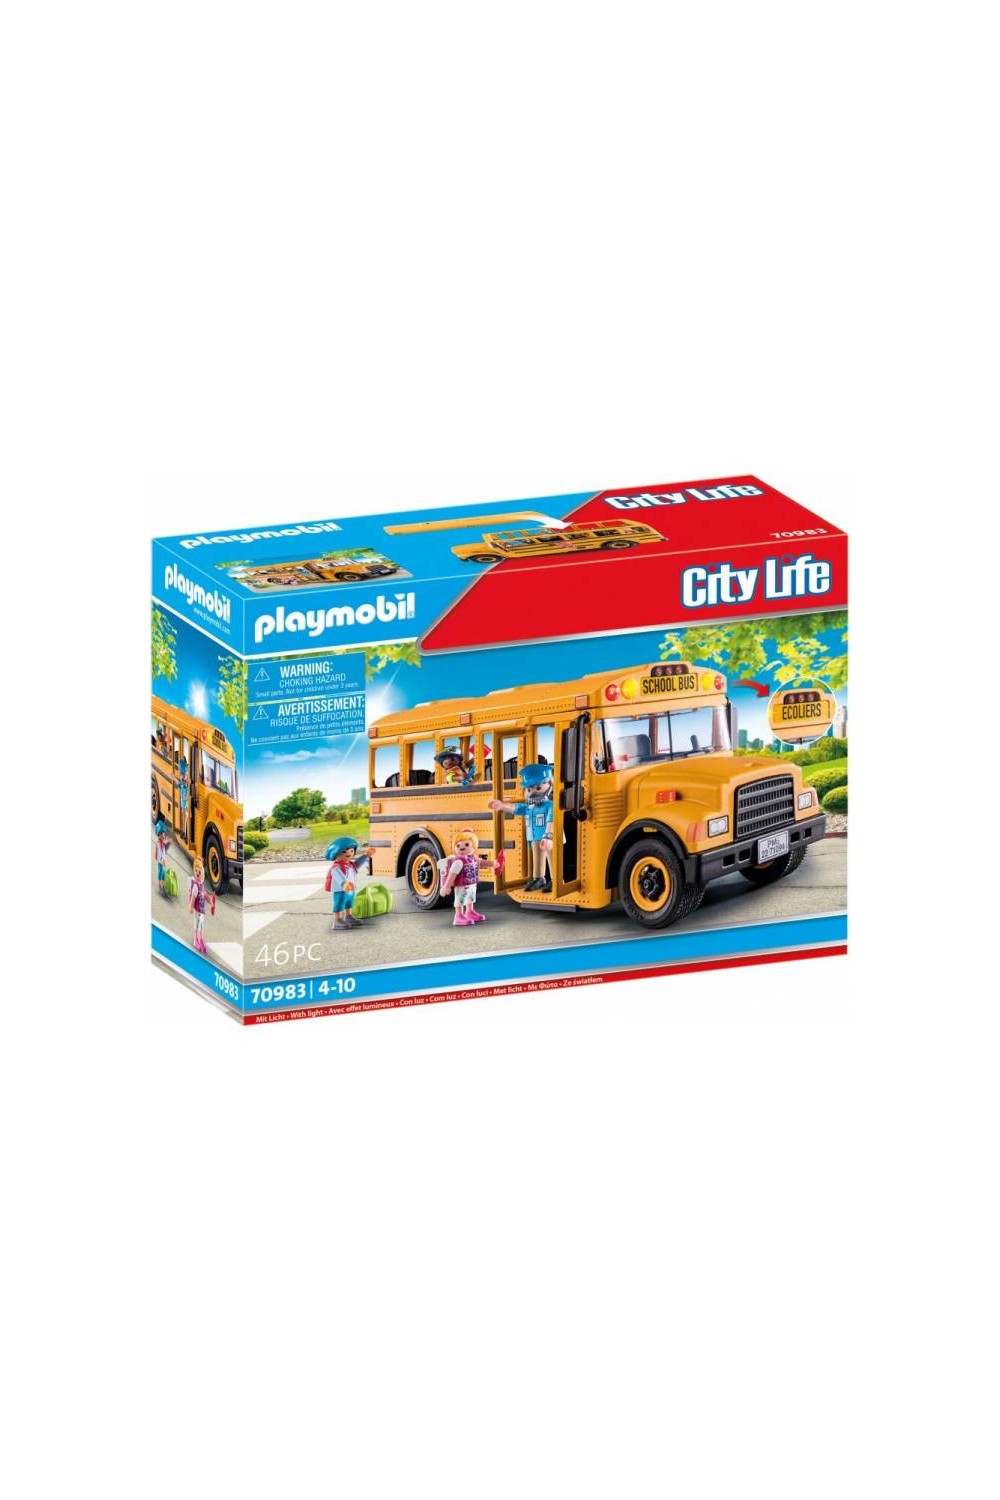 Playmobil City Life Σχολικό Λεωφορείο με Μαθητές για 4-10 ετών 70983